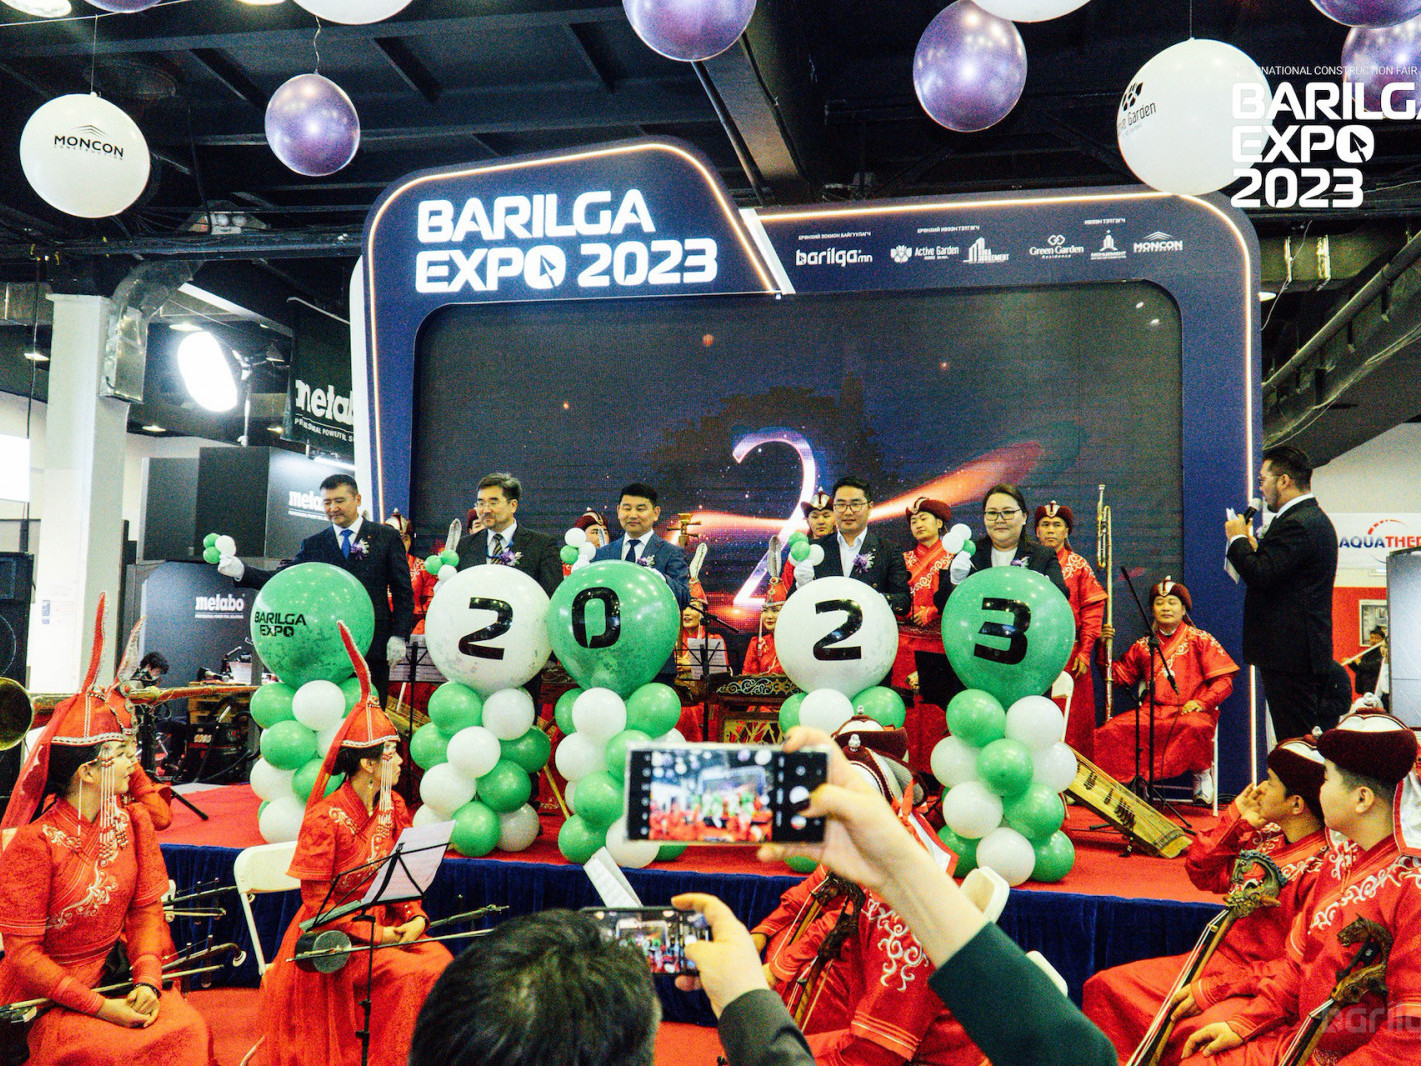 "BARILGA EXPO 2023" үзэсгэлэнд Хятад, Солонгос, Казахстан, Итали, Турк, Герман зэрэг олон улсын компаниуд оролцоно